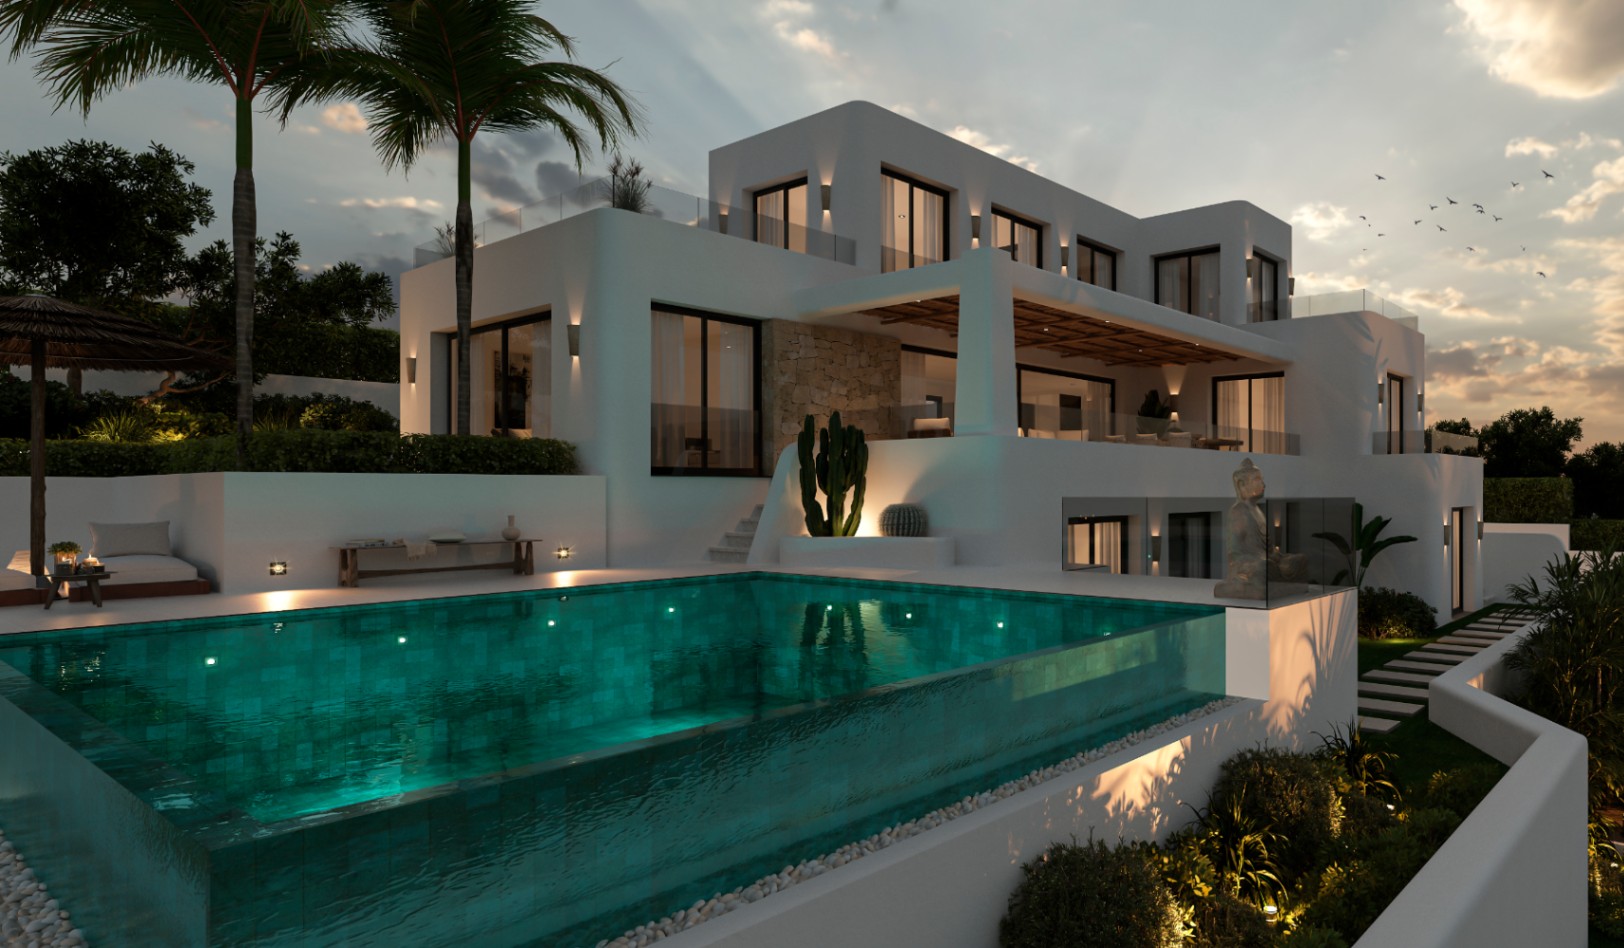 Nieuwbouw villa in Ibiza-stijl te koop in Monte Solana Pedreguer, Costa Blanca